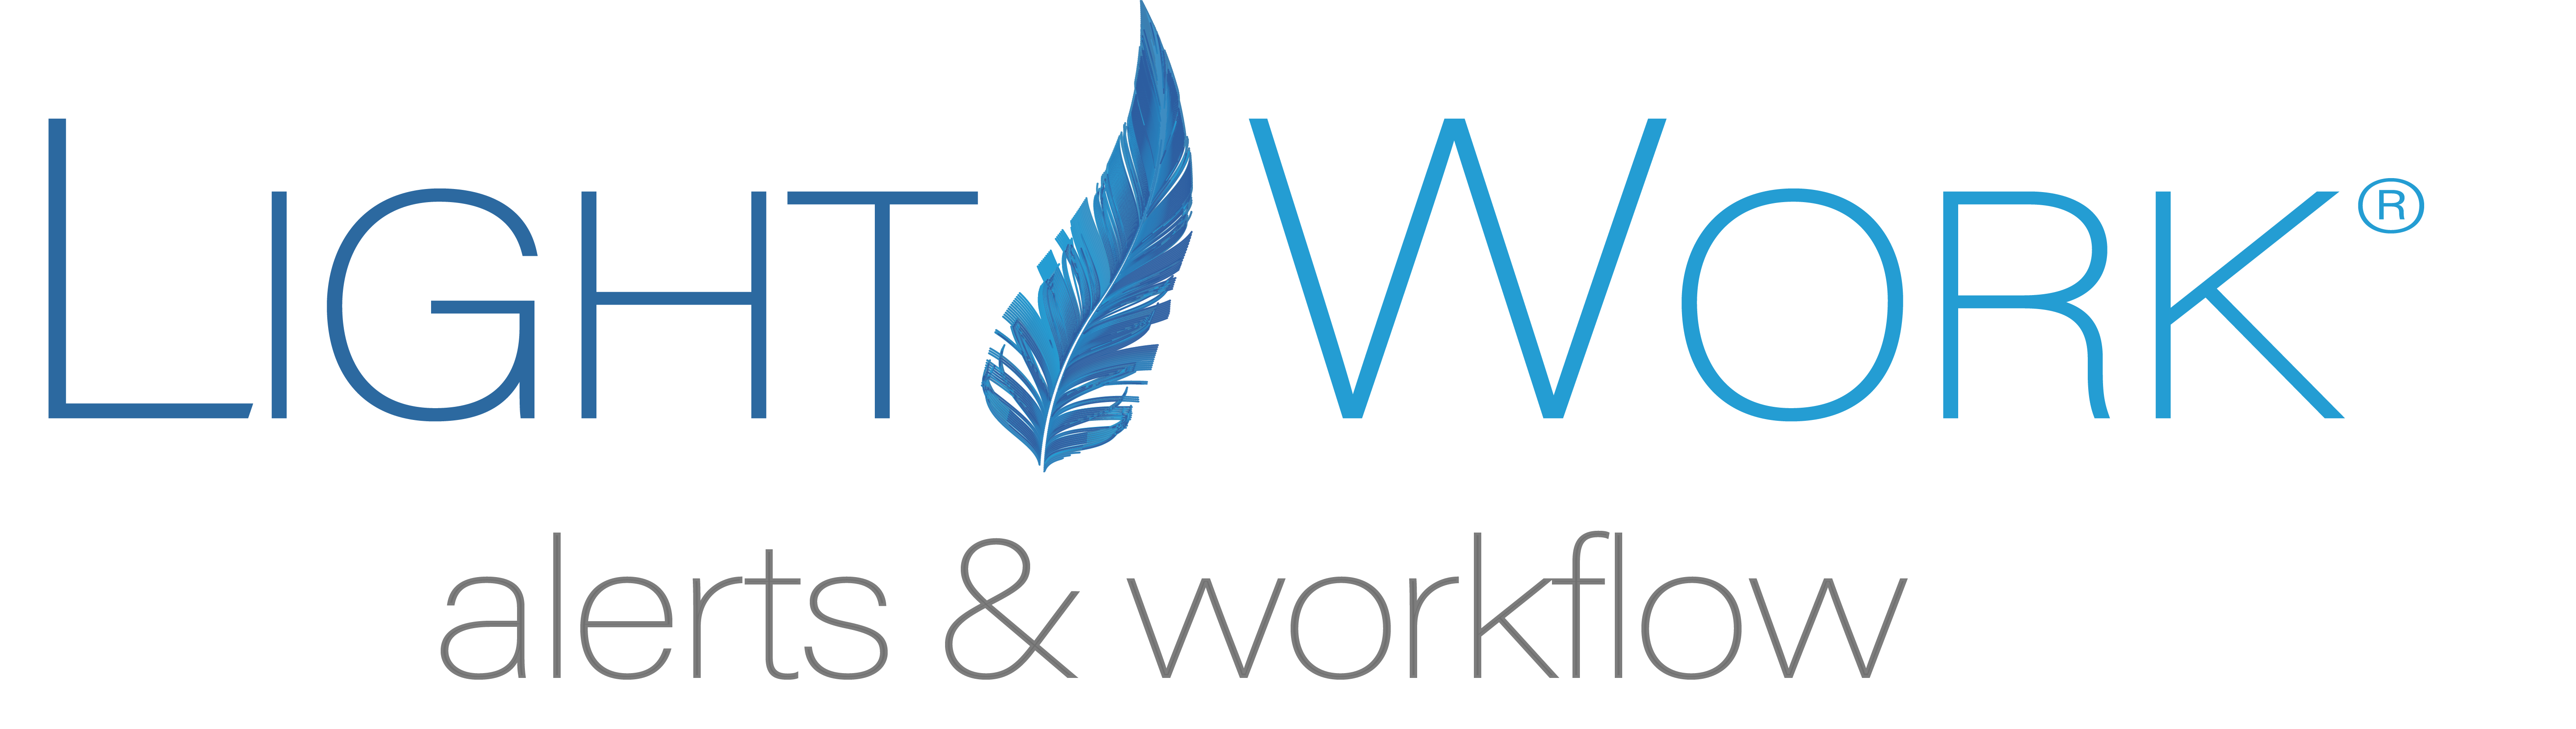 lightwork alerts & workflow logo